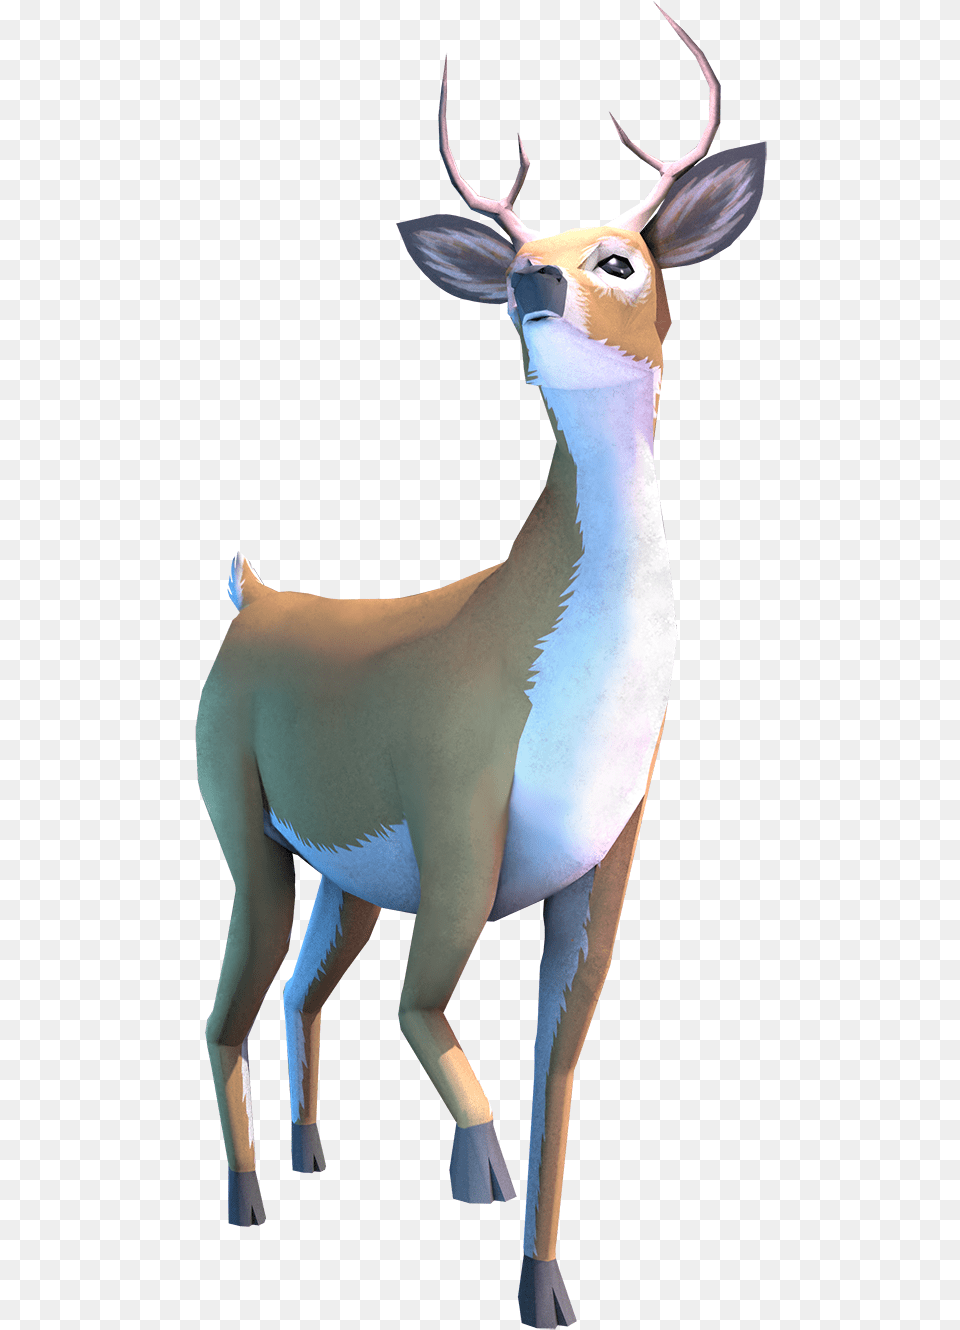 Animal Figure, Deer, Mammal, Wildlife, Antelope Free Transparent Png